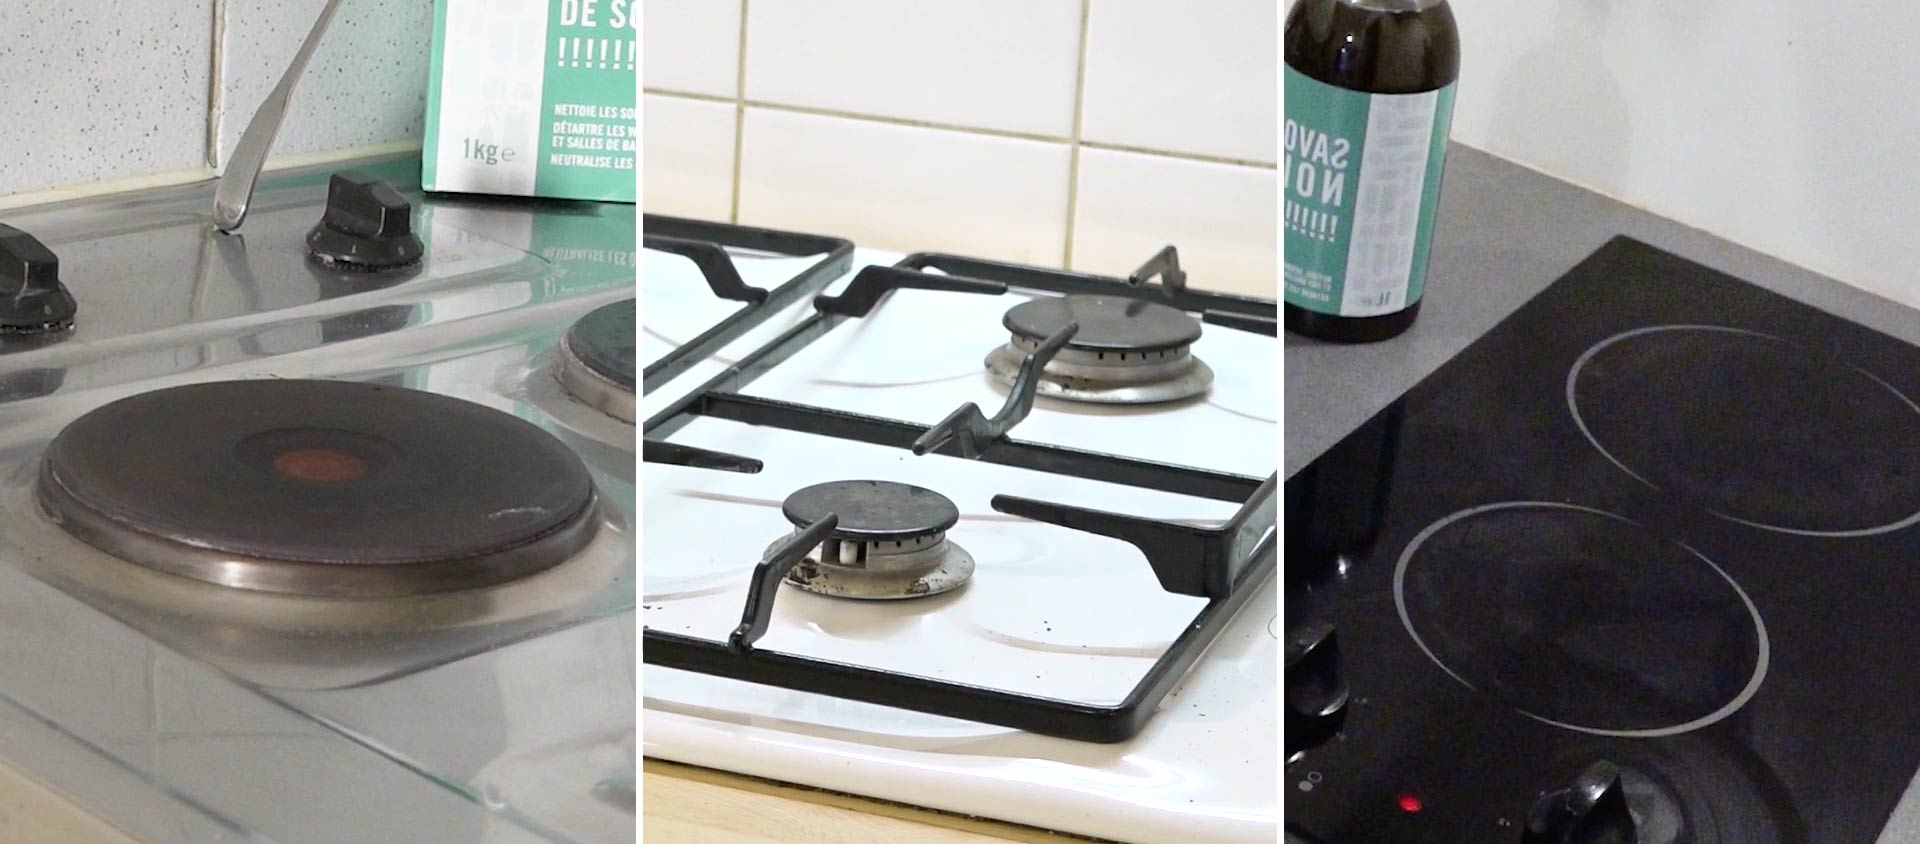 Nettoyer plaque de cuisson : Comment nettoyer une plaque de cuisson ?